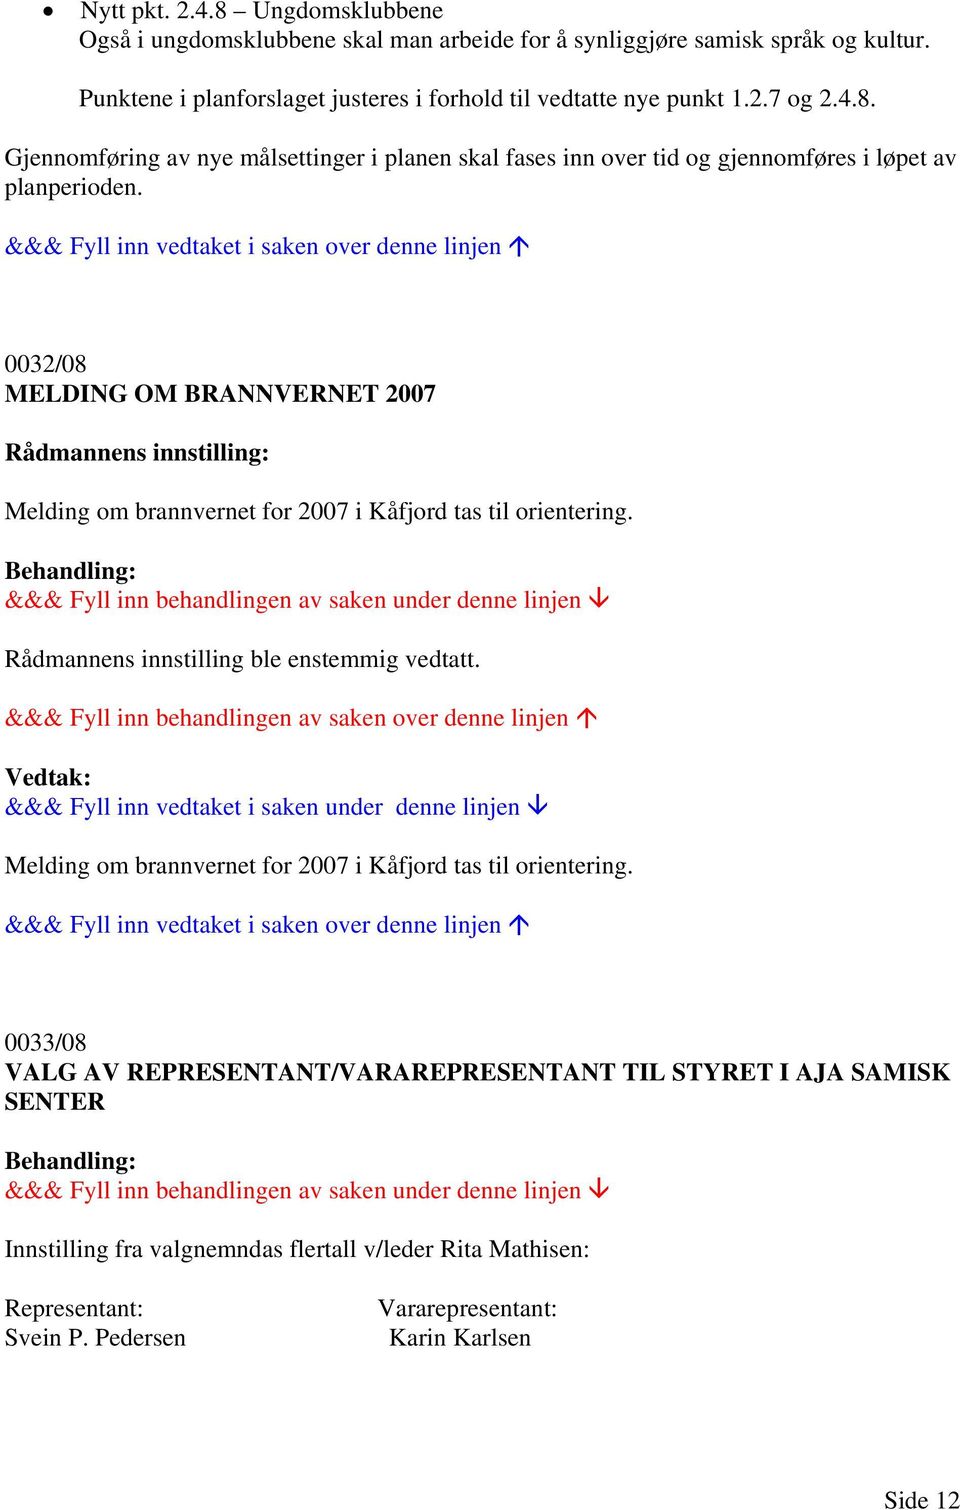 0032/08 MELDING OM BRANNVERNET 2007 Rådmannens innstilling: Melding om brannvernet for 2007 i Kåfjord tas til orientering. Rådmannens innstilling ble enstemmig vedtatt.